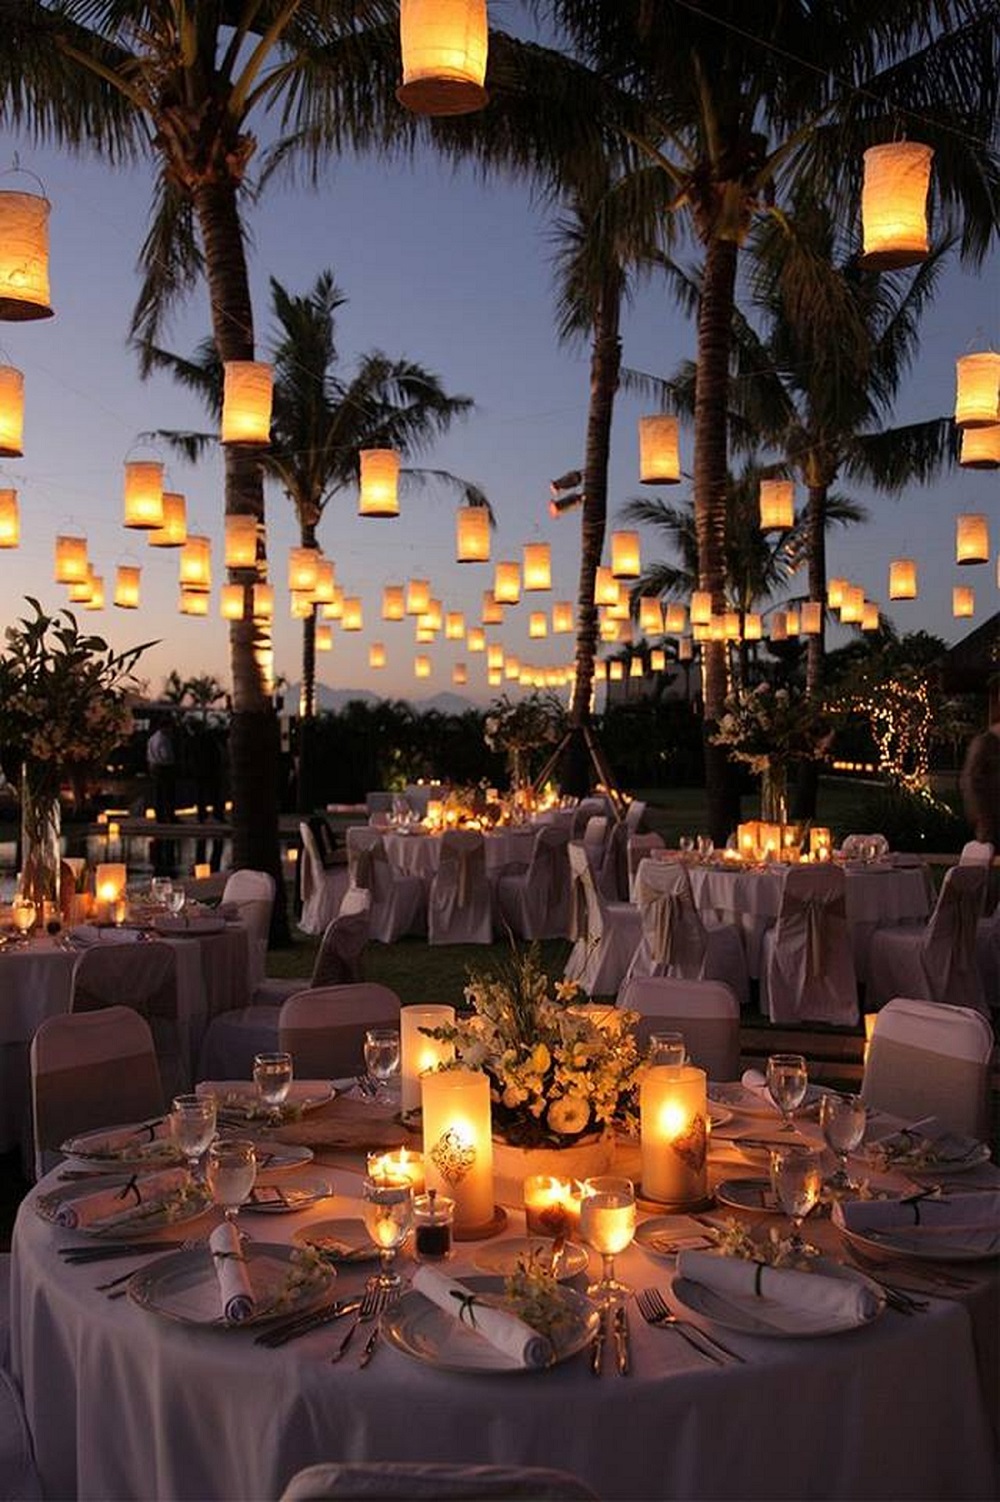 décoration lumineuse mariage sous les étoiles bougies lanternes dans les aires